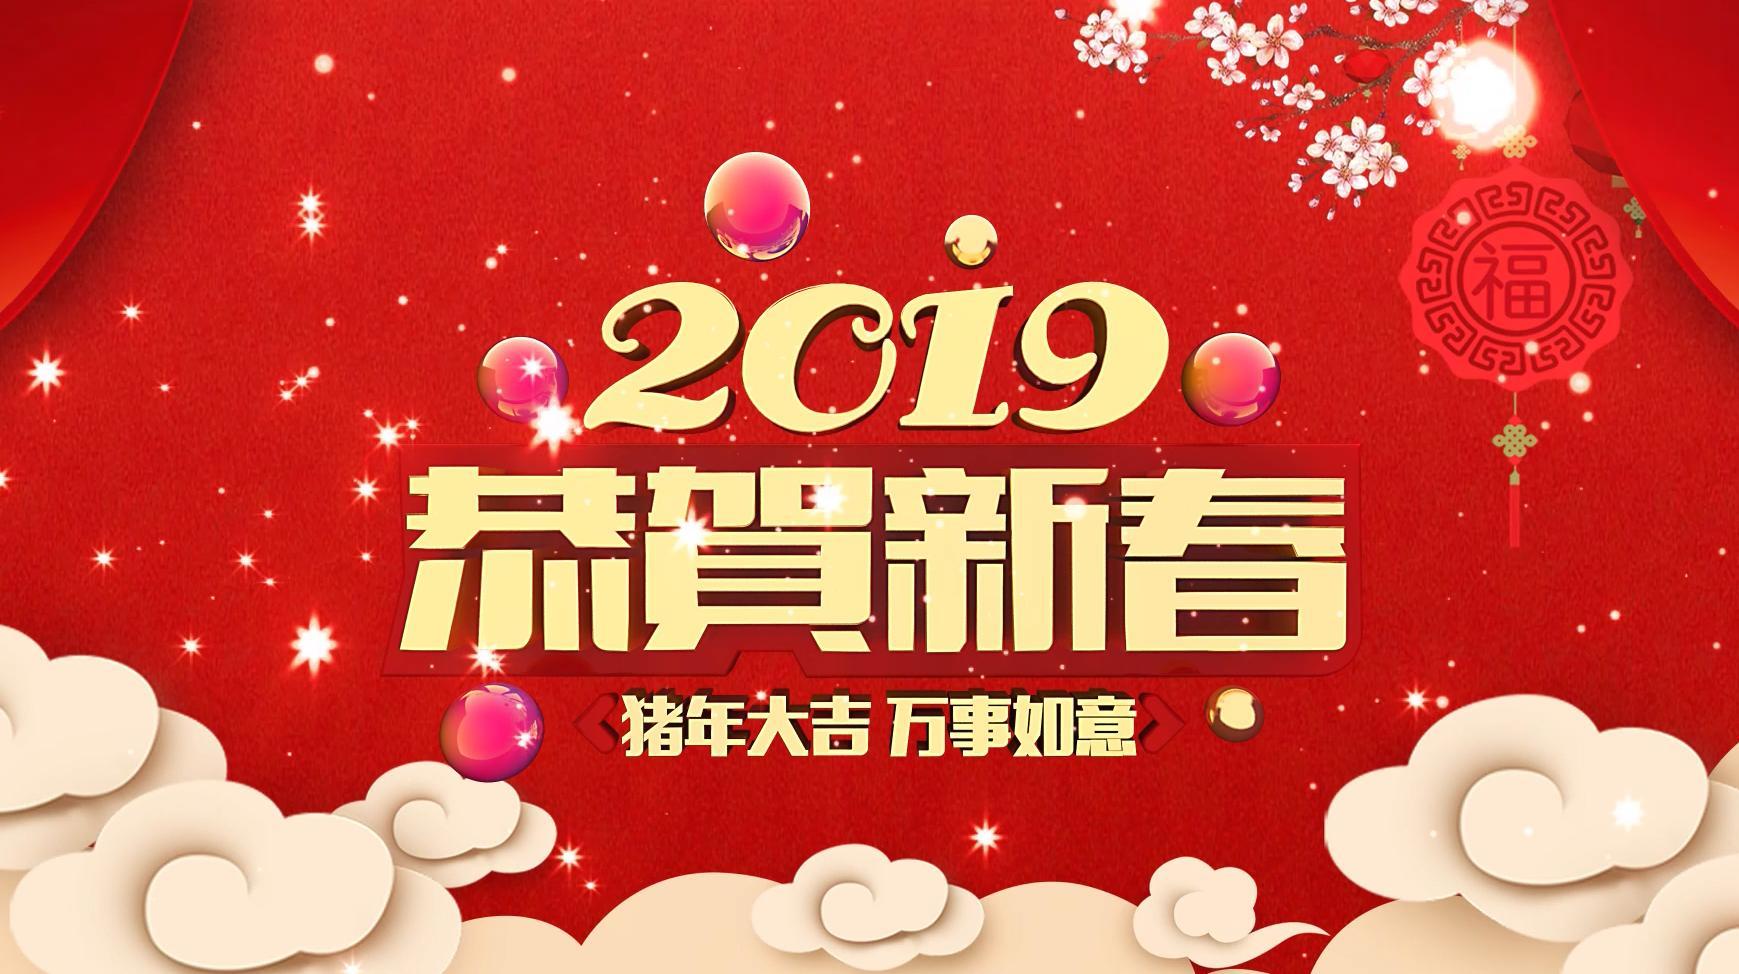 2019年恭贺新春猪年大吉万事如意